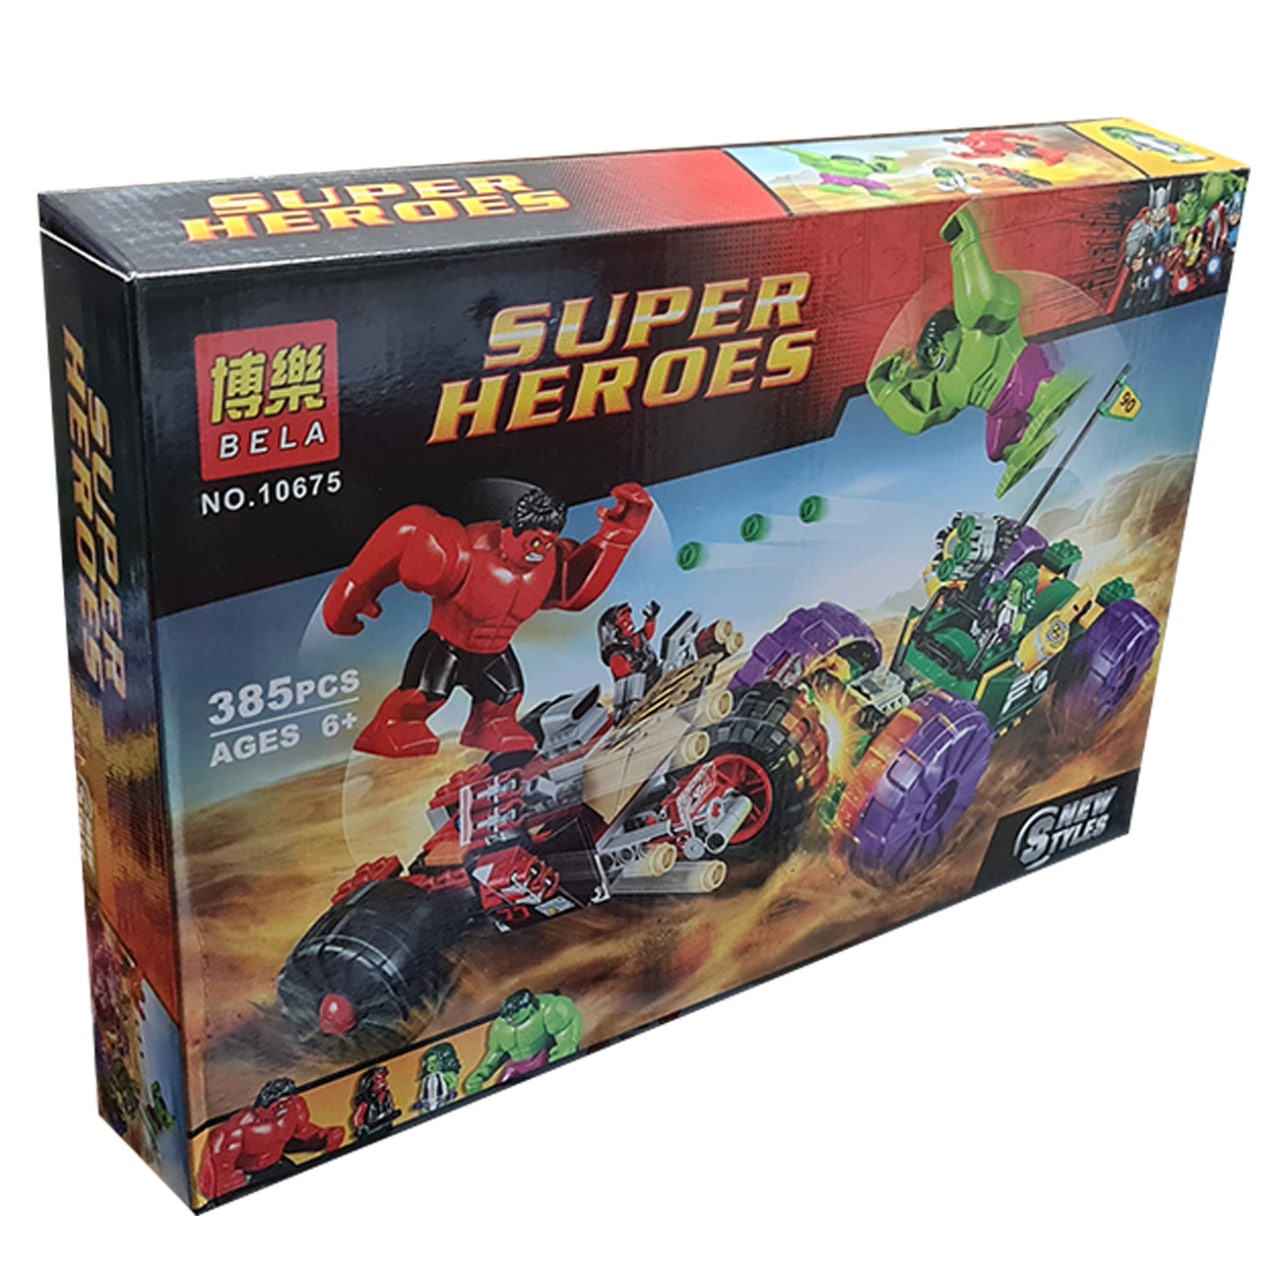 ساختنی بلا مدل super heroes کد 10675